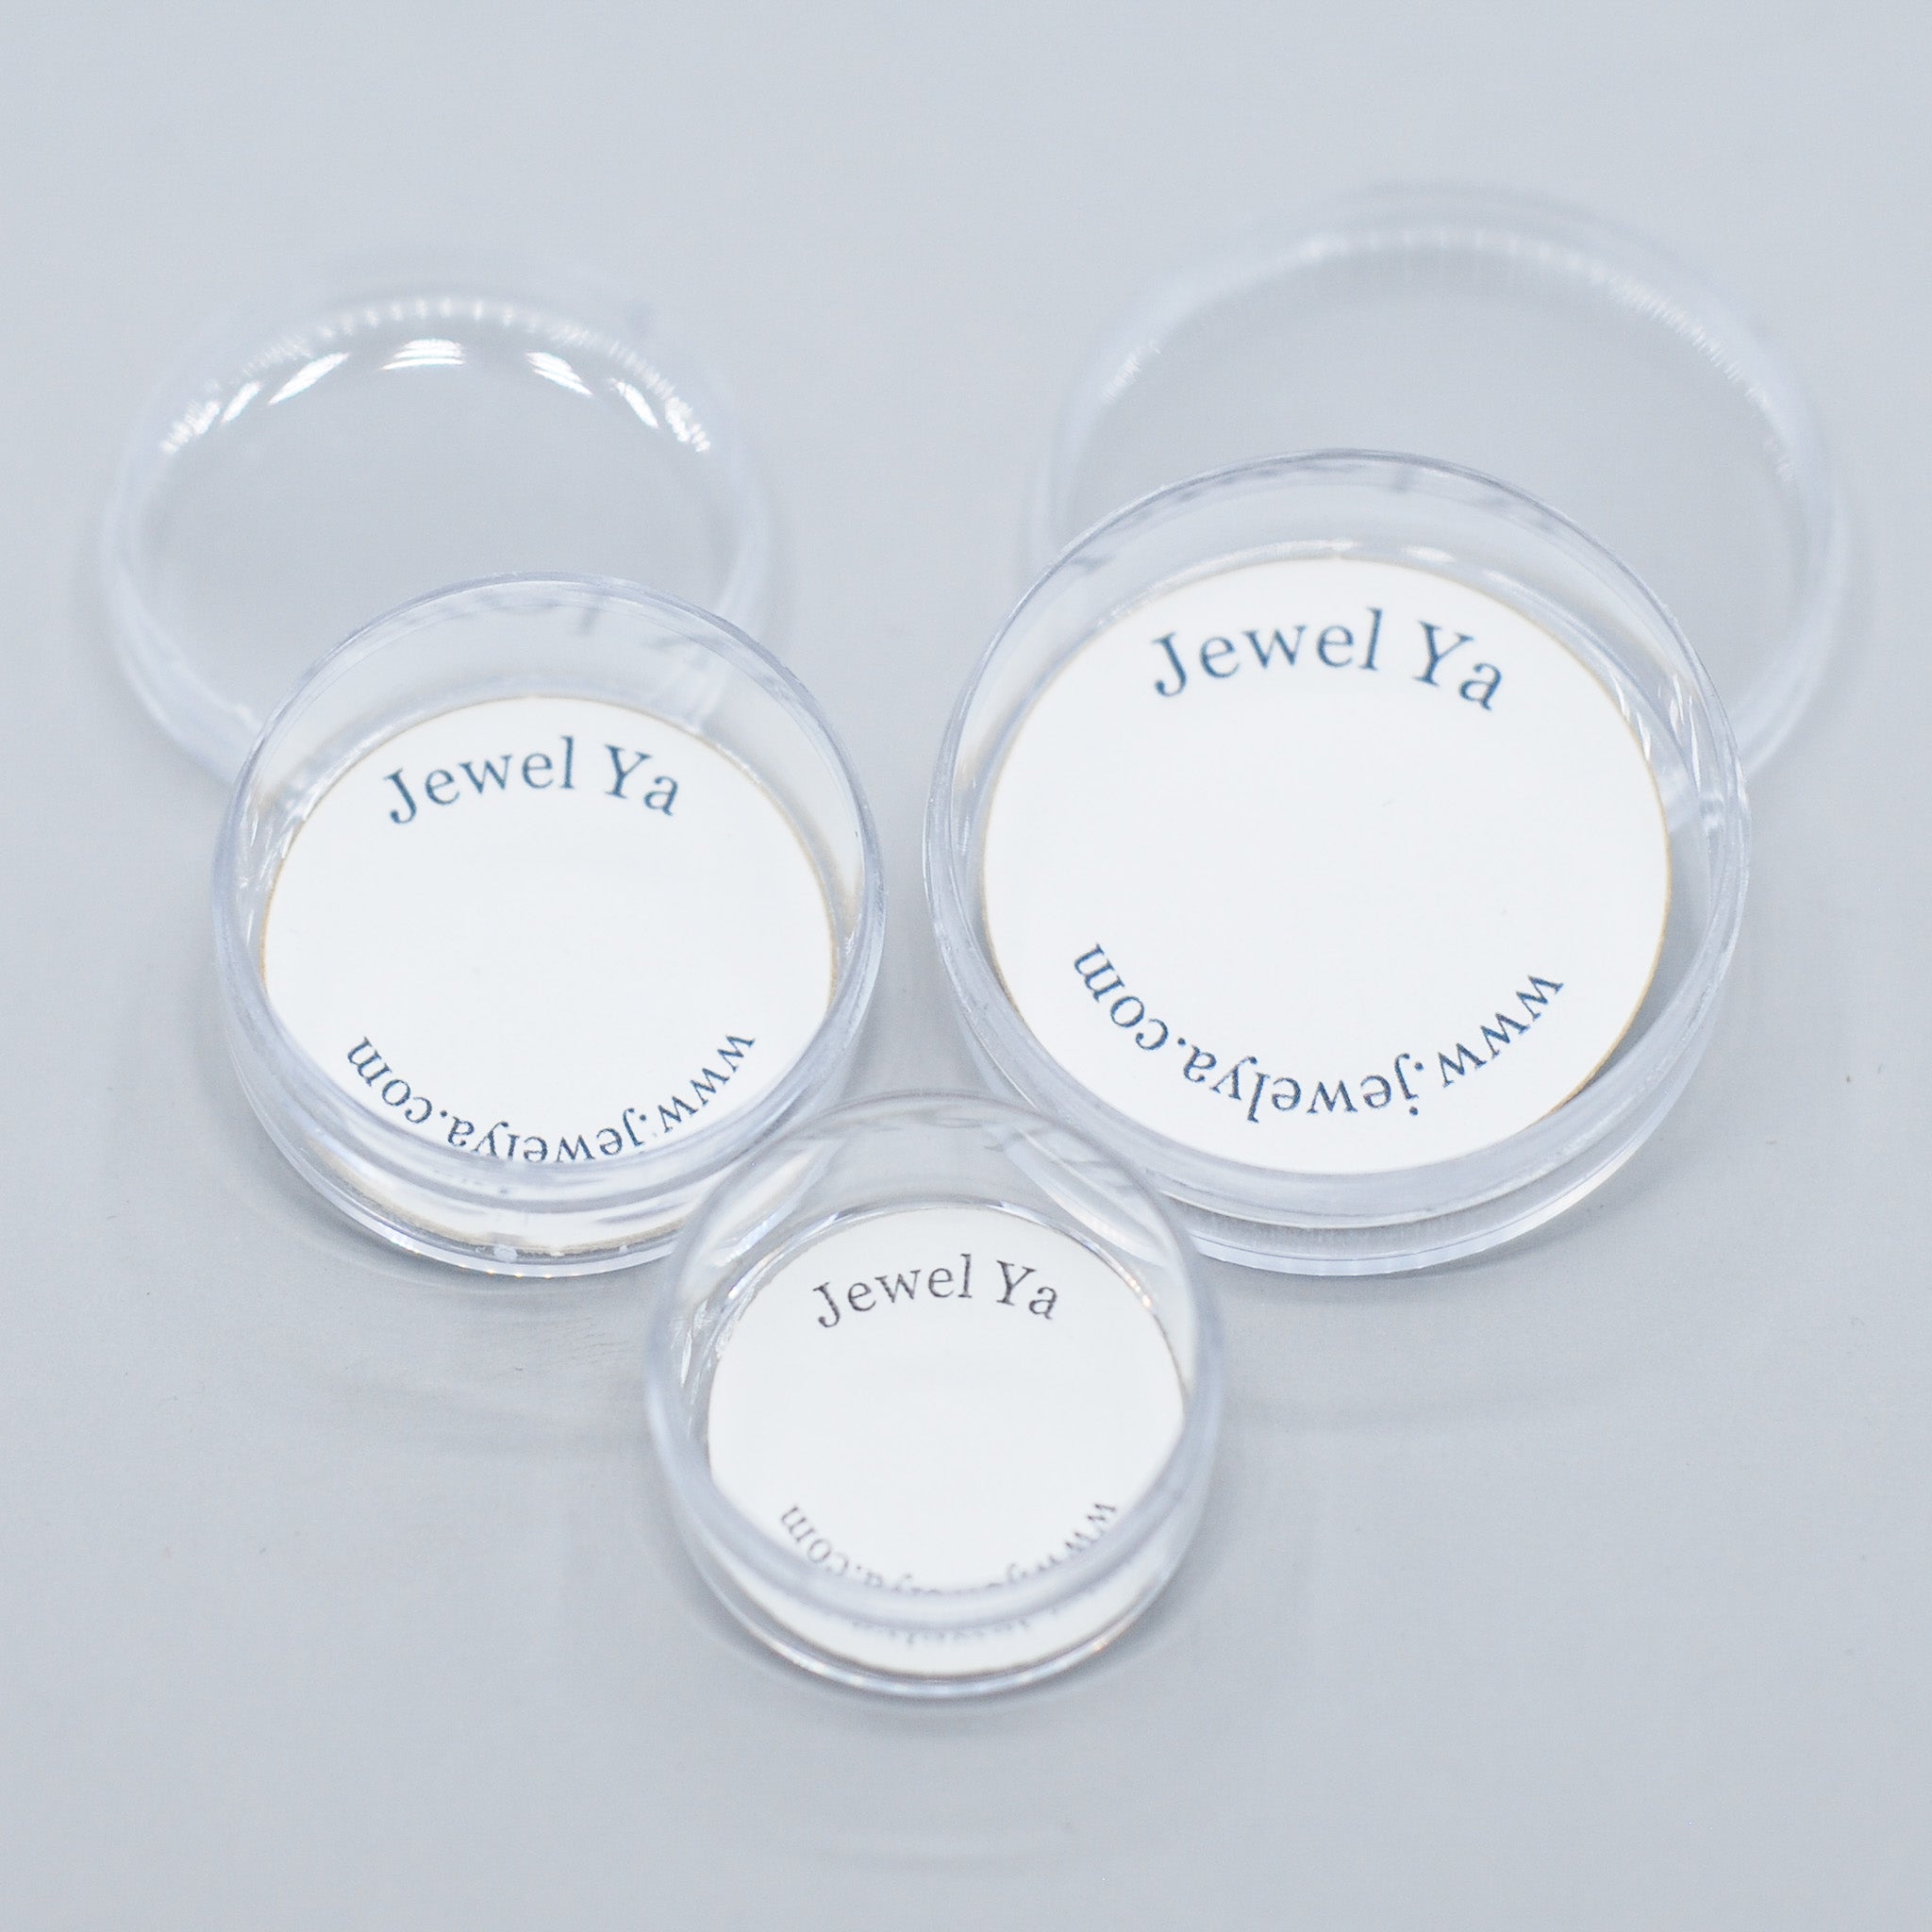 4mm Sterling Silver Initial Bracelet - Jewel Ya